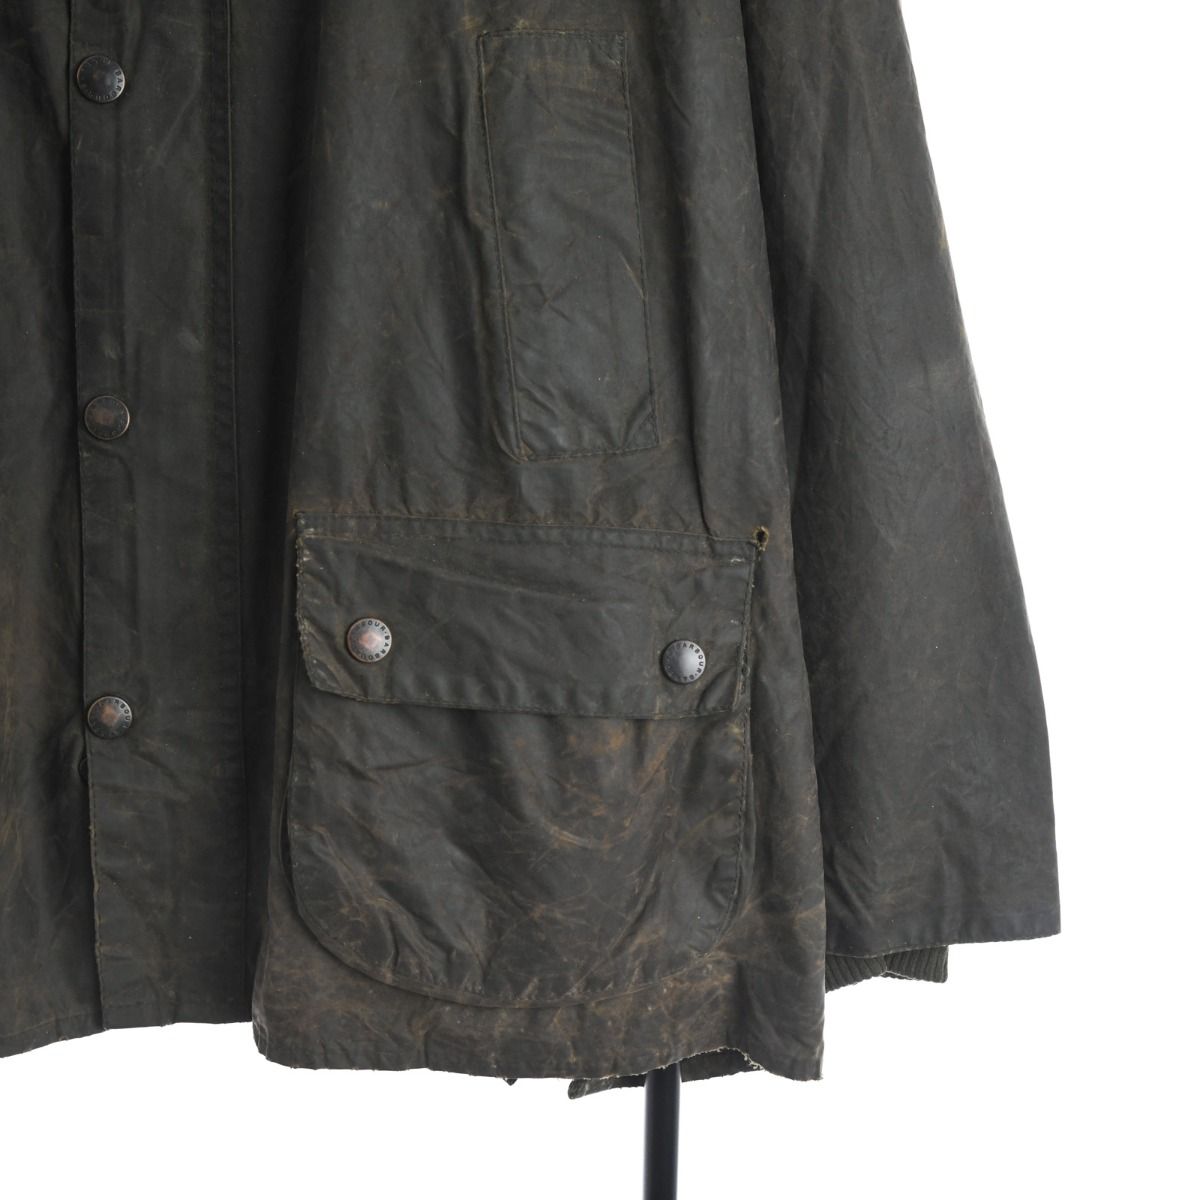 Barbour 1990s Bedale Wax Cotton Jacket